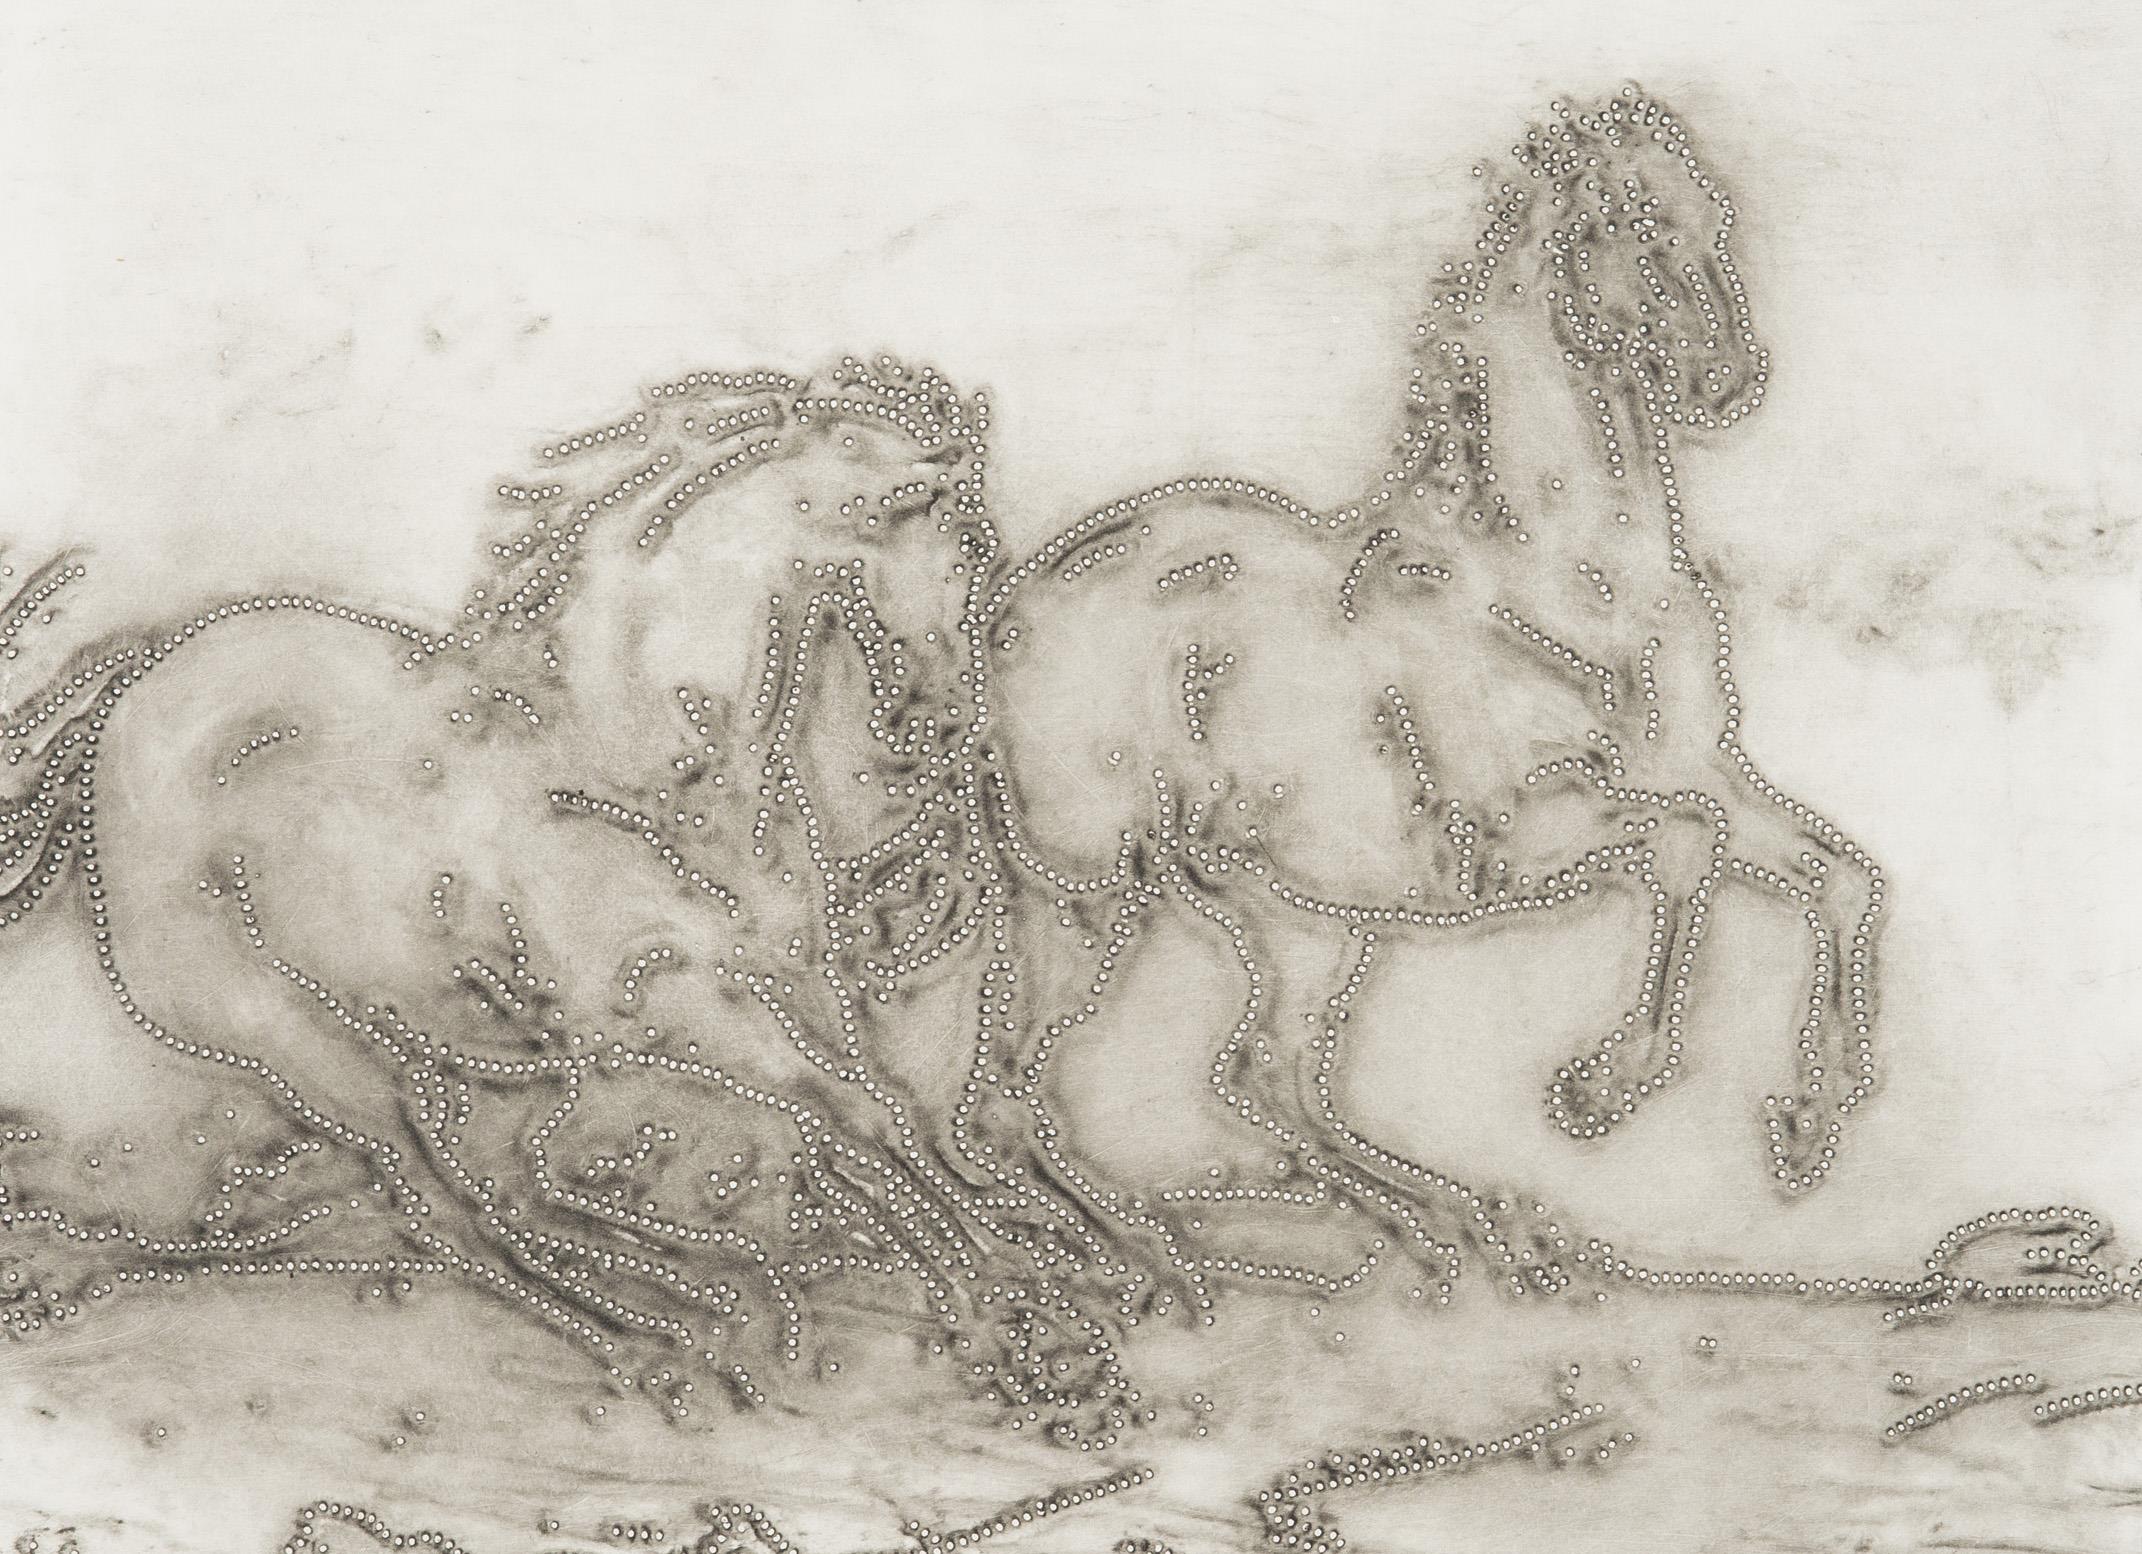 Alena Kučerová: Horses, source: Dorotheum